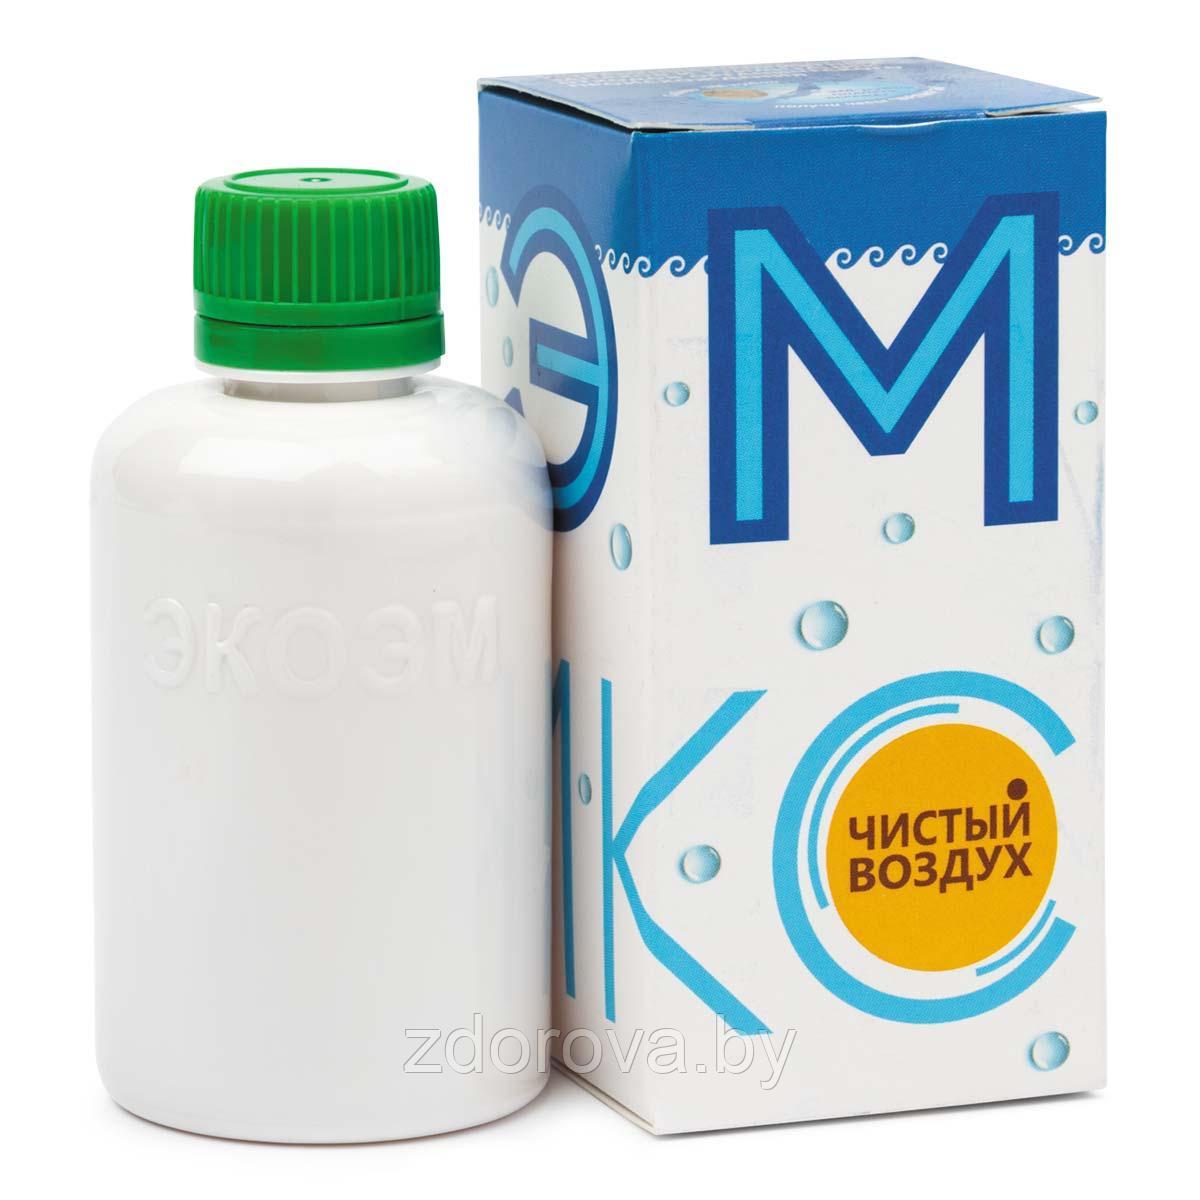 Биодезодорант бытовой «Эмикс-О», концентрат, 50 мл (Устраняет неприятные запахи)